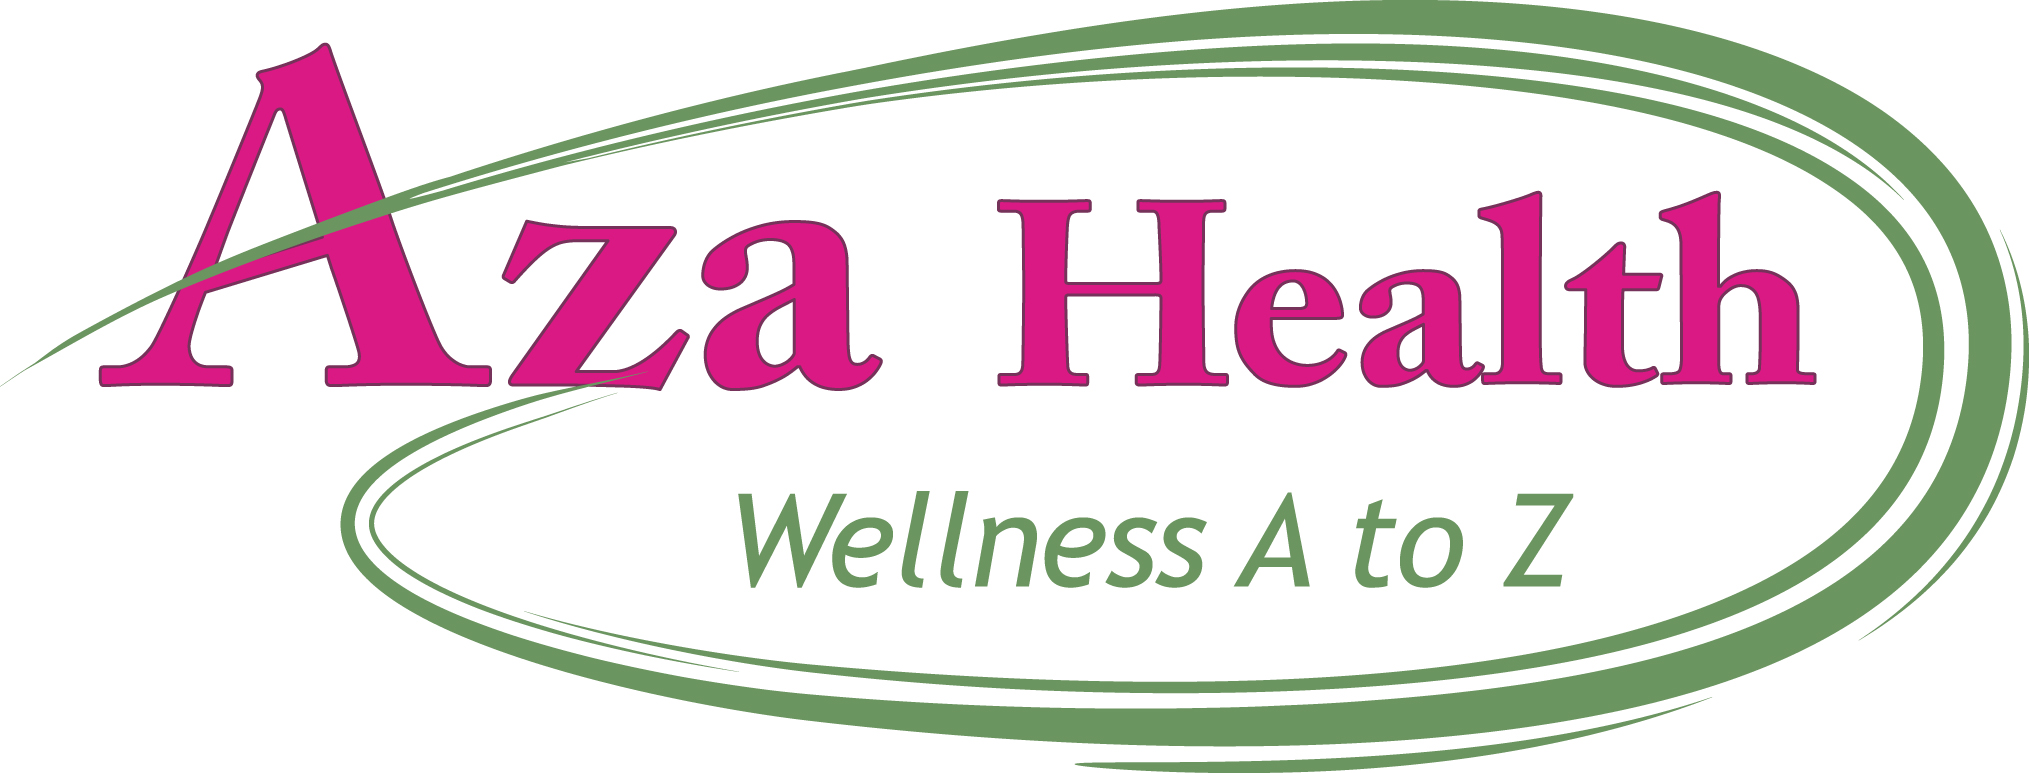 Aza Health